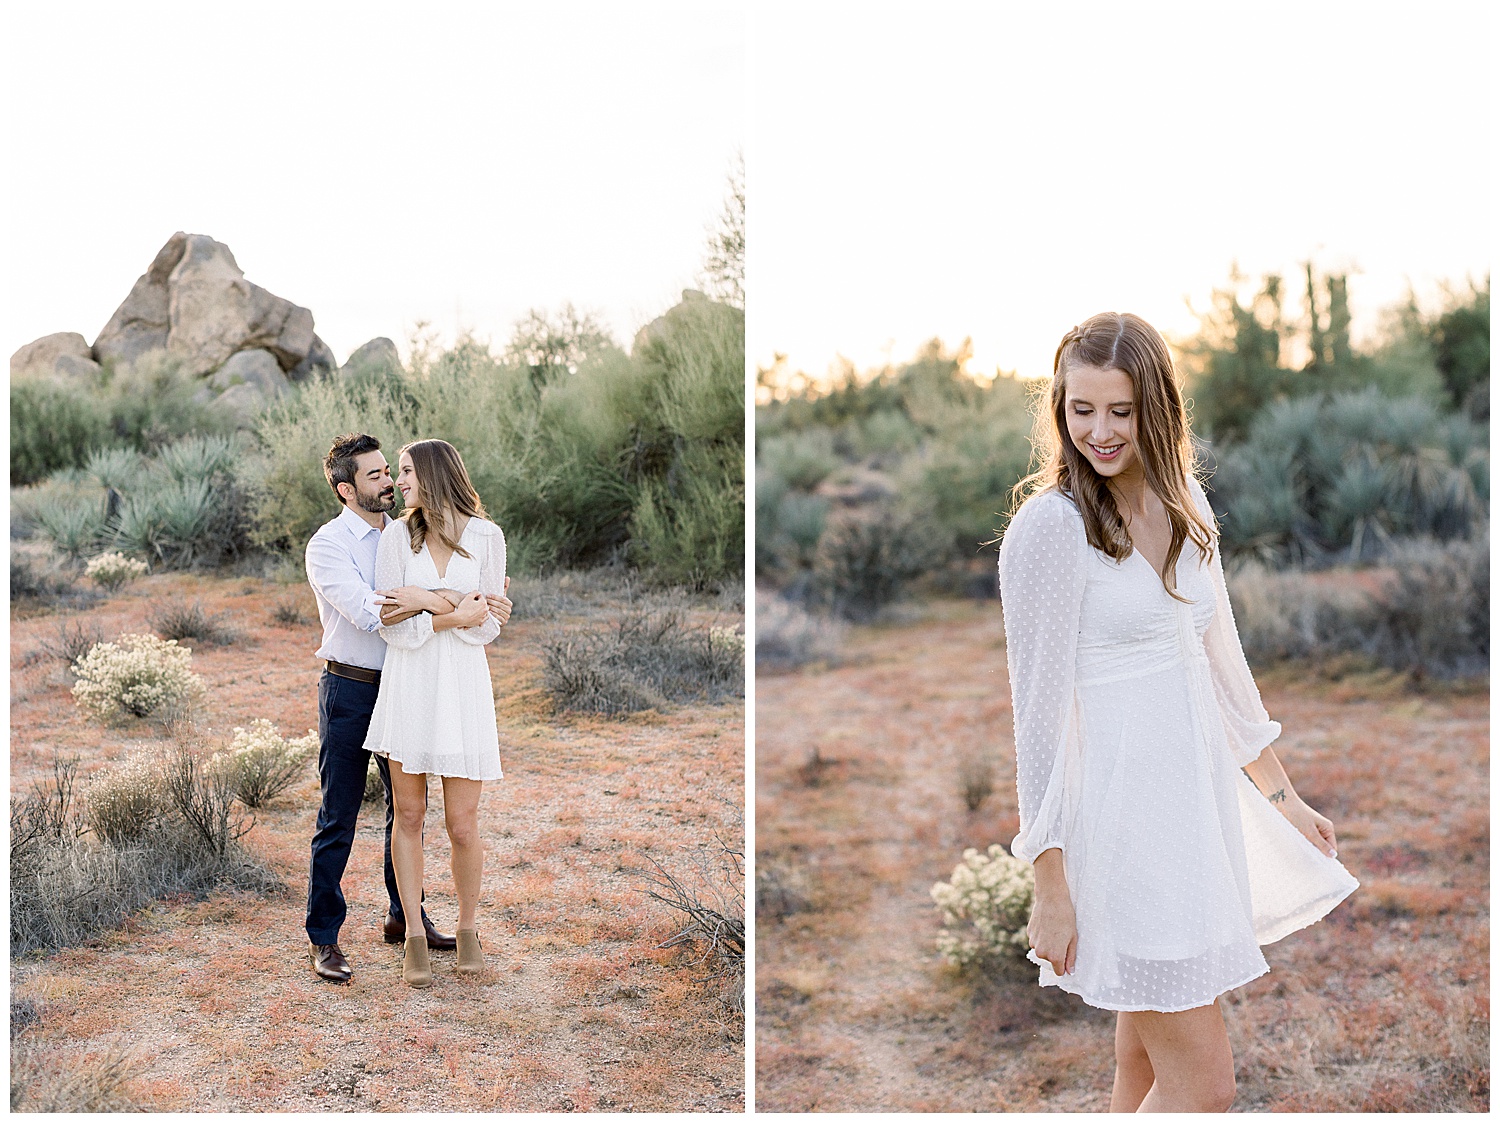 White bridal dress for North Scottsdale Desert Engagement Session